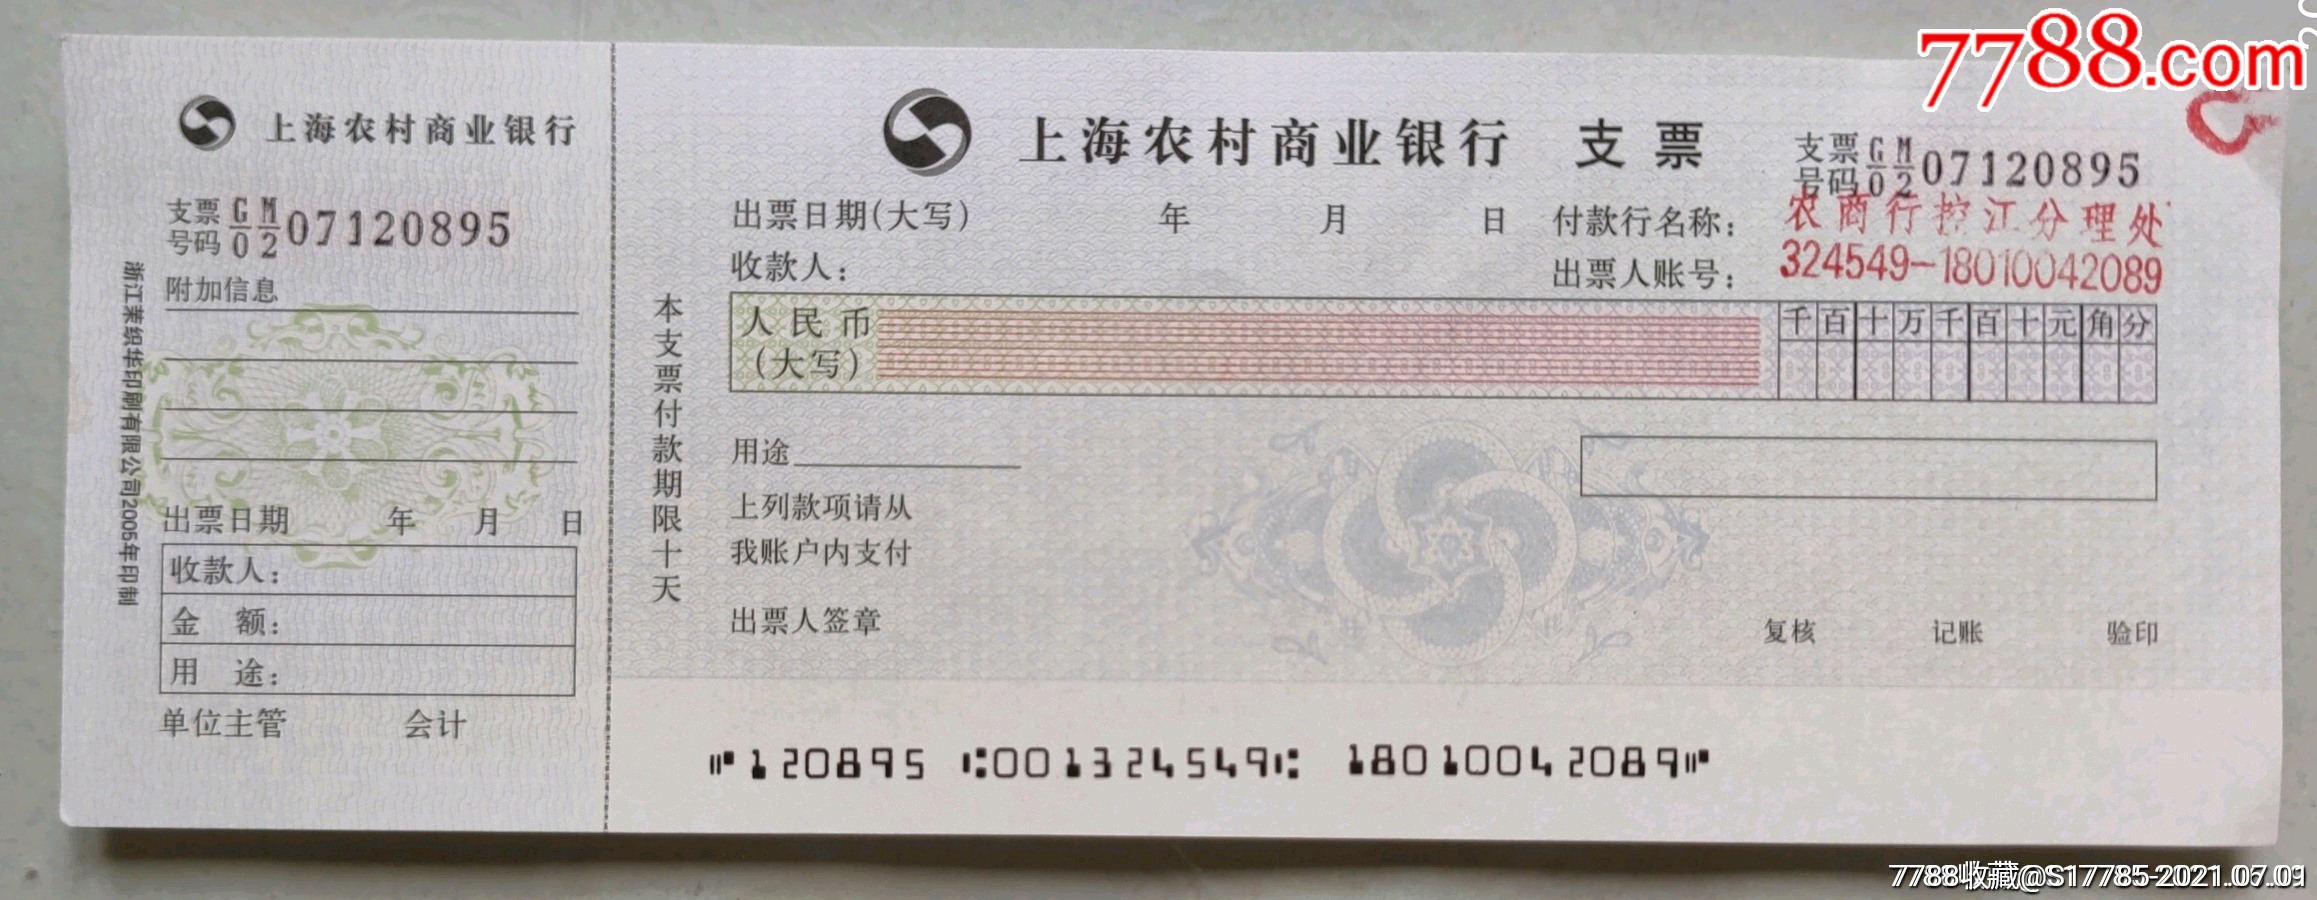 上海农村商业银行支票【空白】